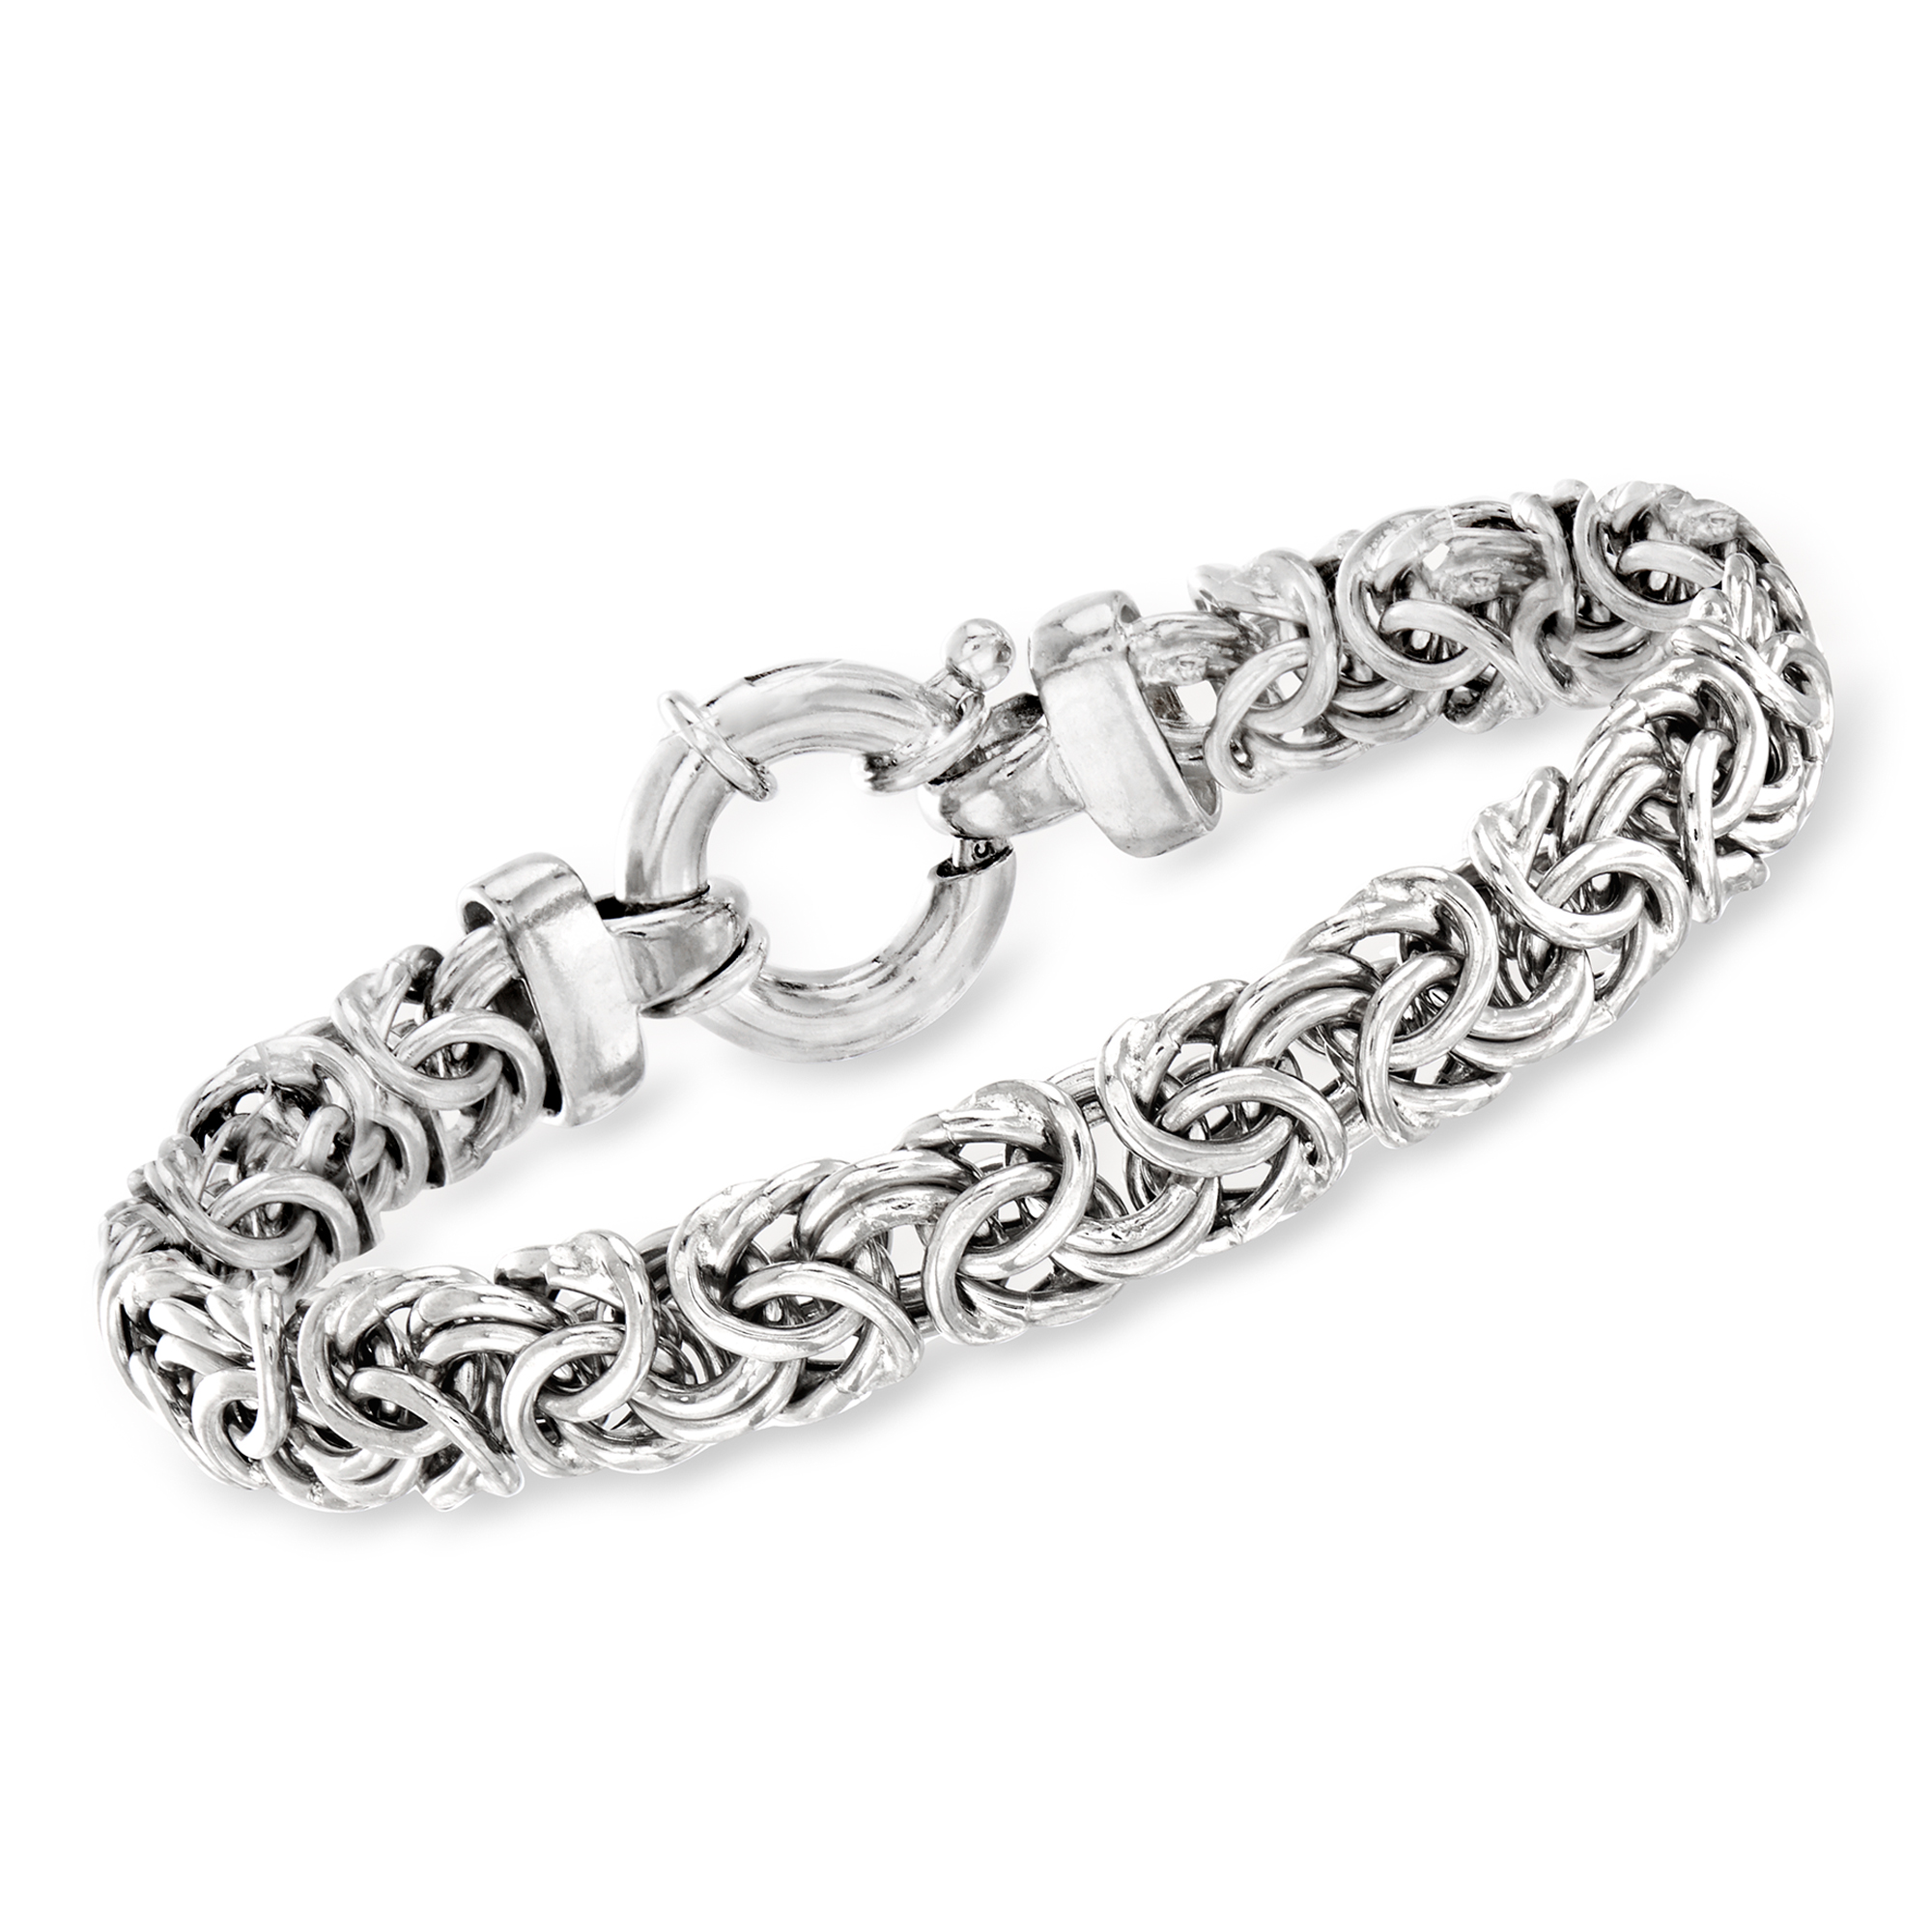 Men's Silver Byzantine Bracelet: 8